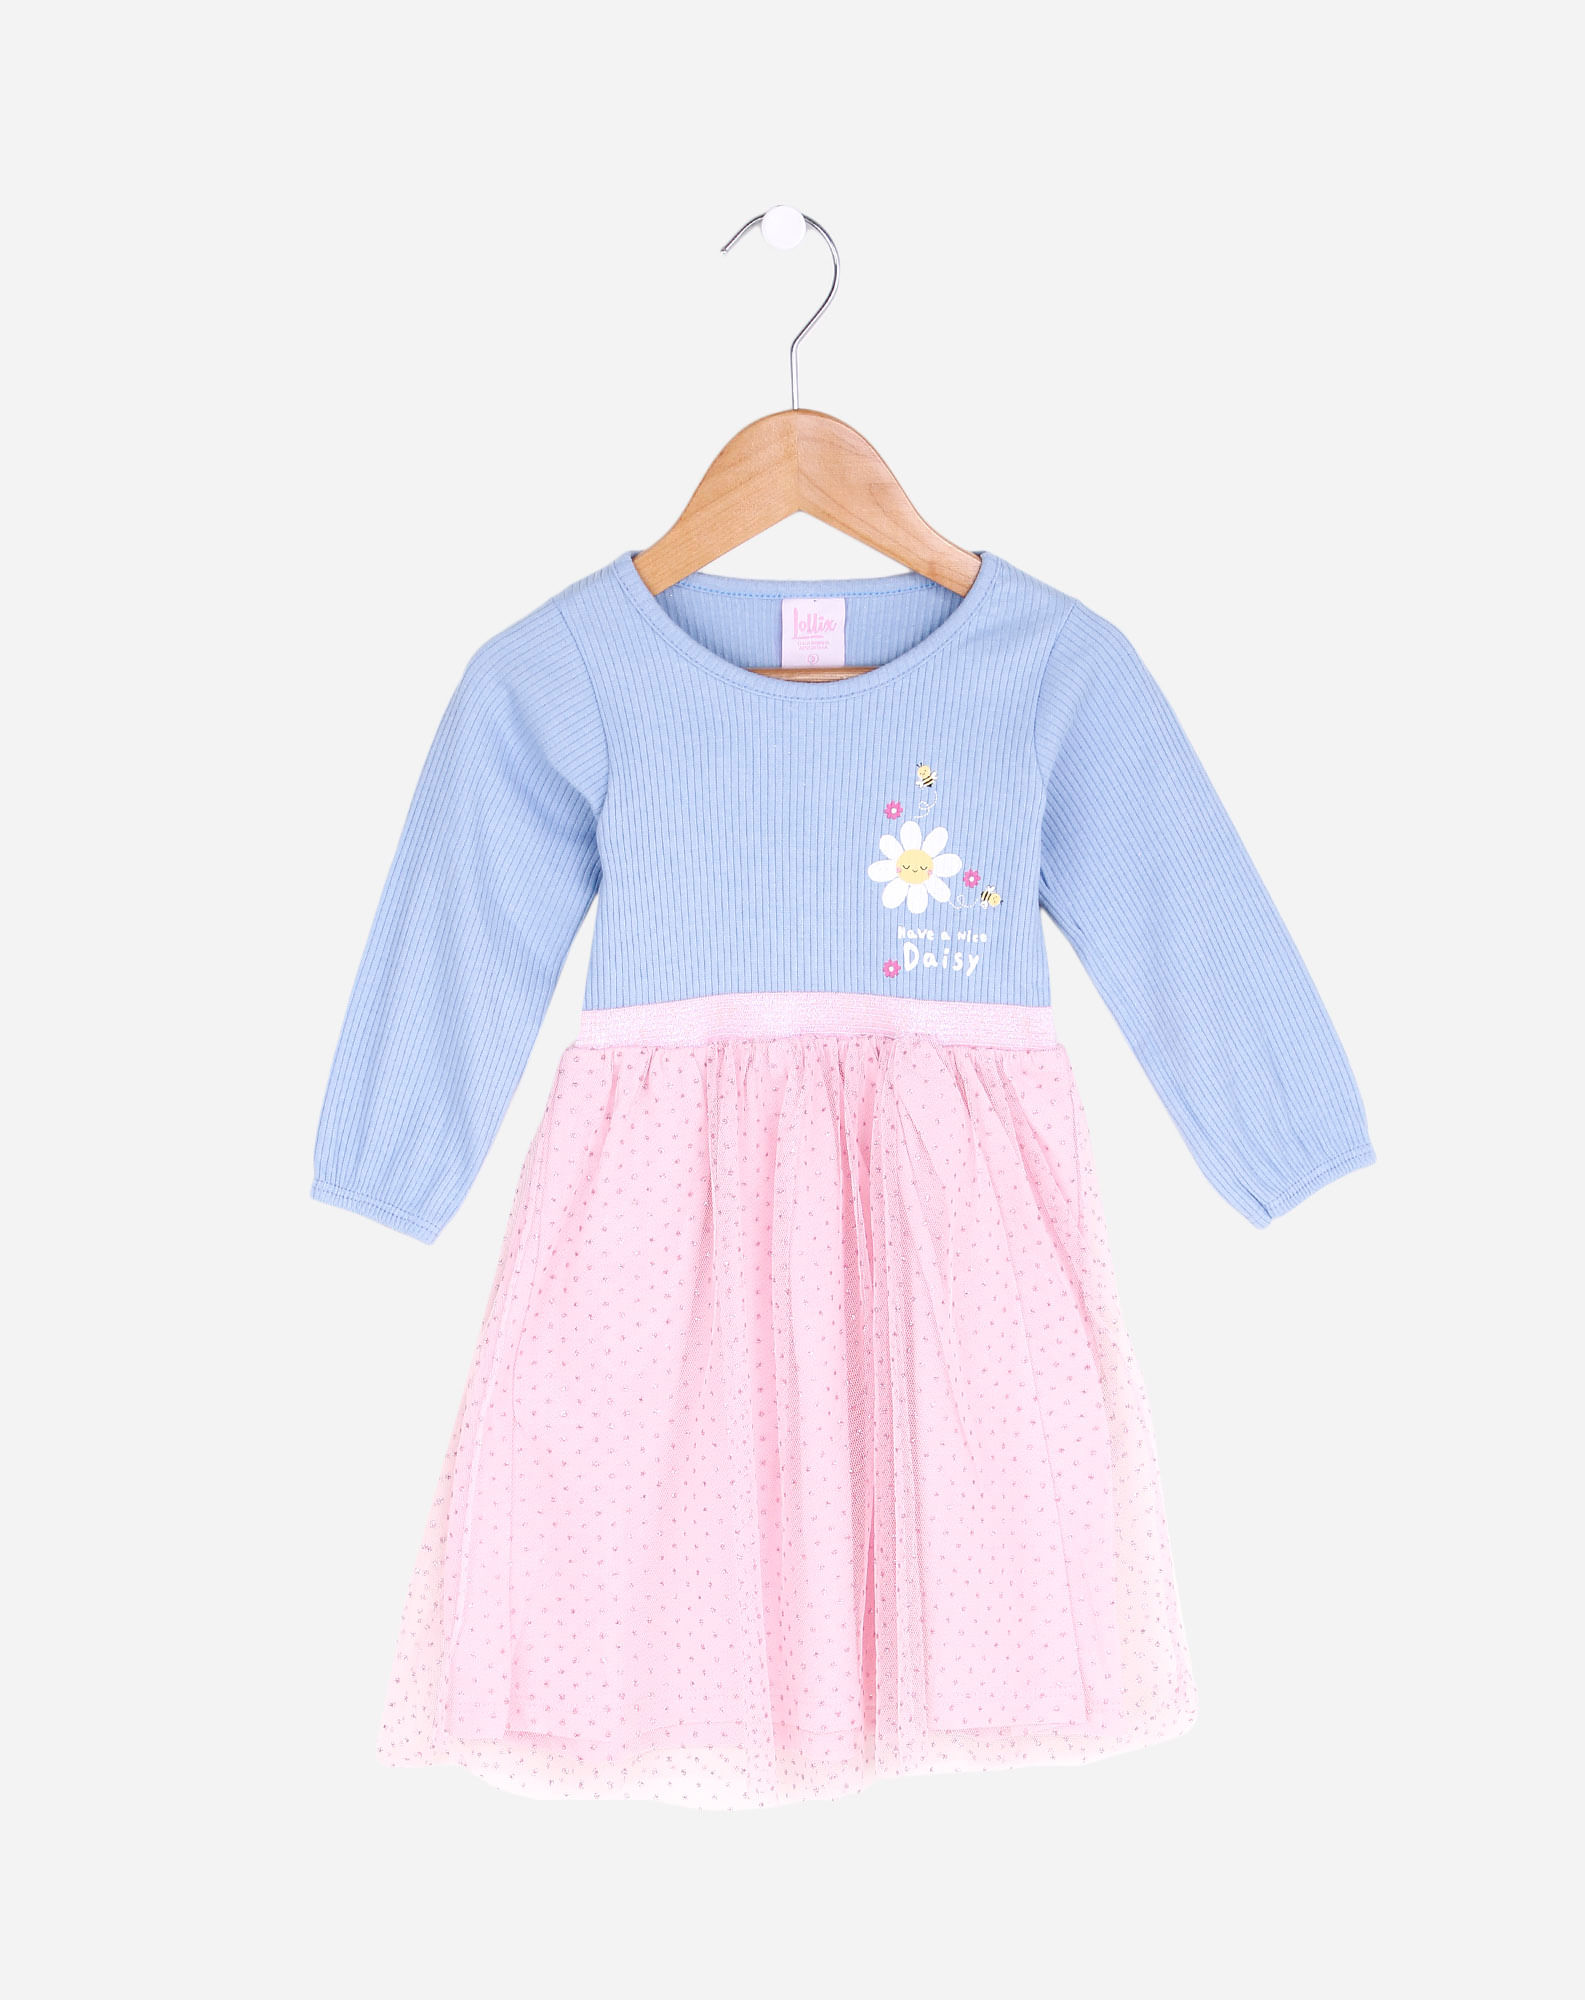 700501001 vestido manga longa infantil menina – tam. 1 a 3 anos azul/rosa 1 6a9